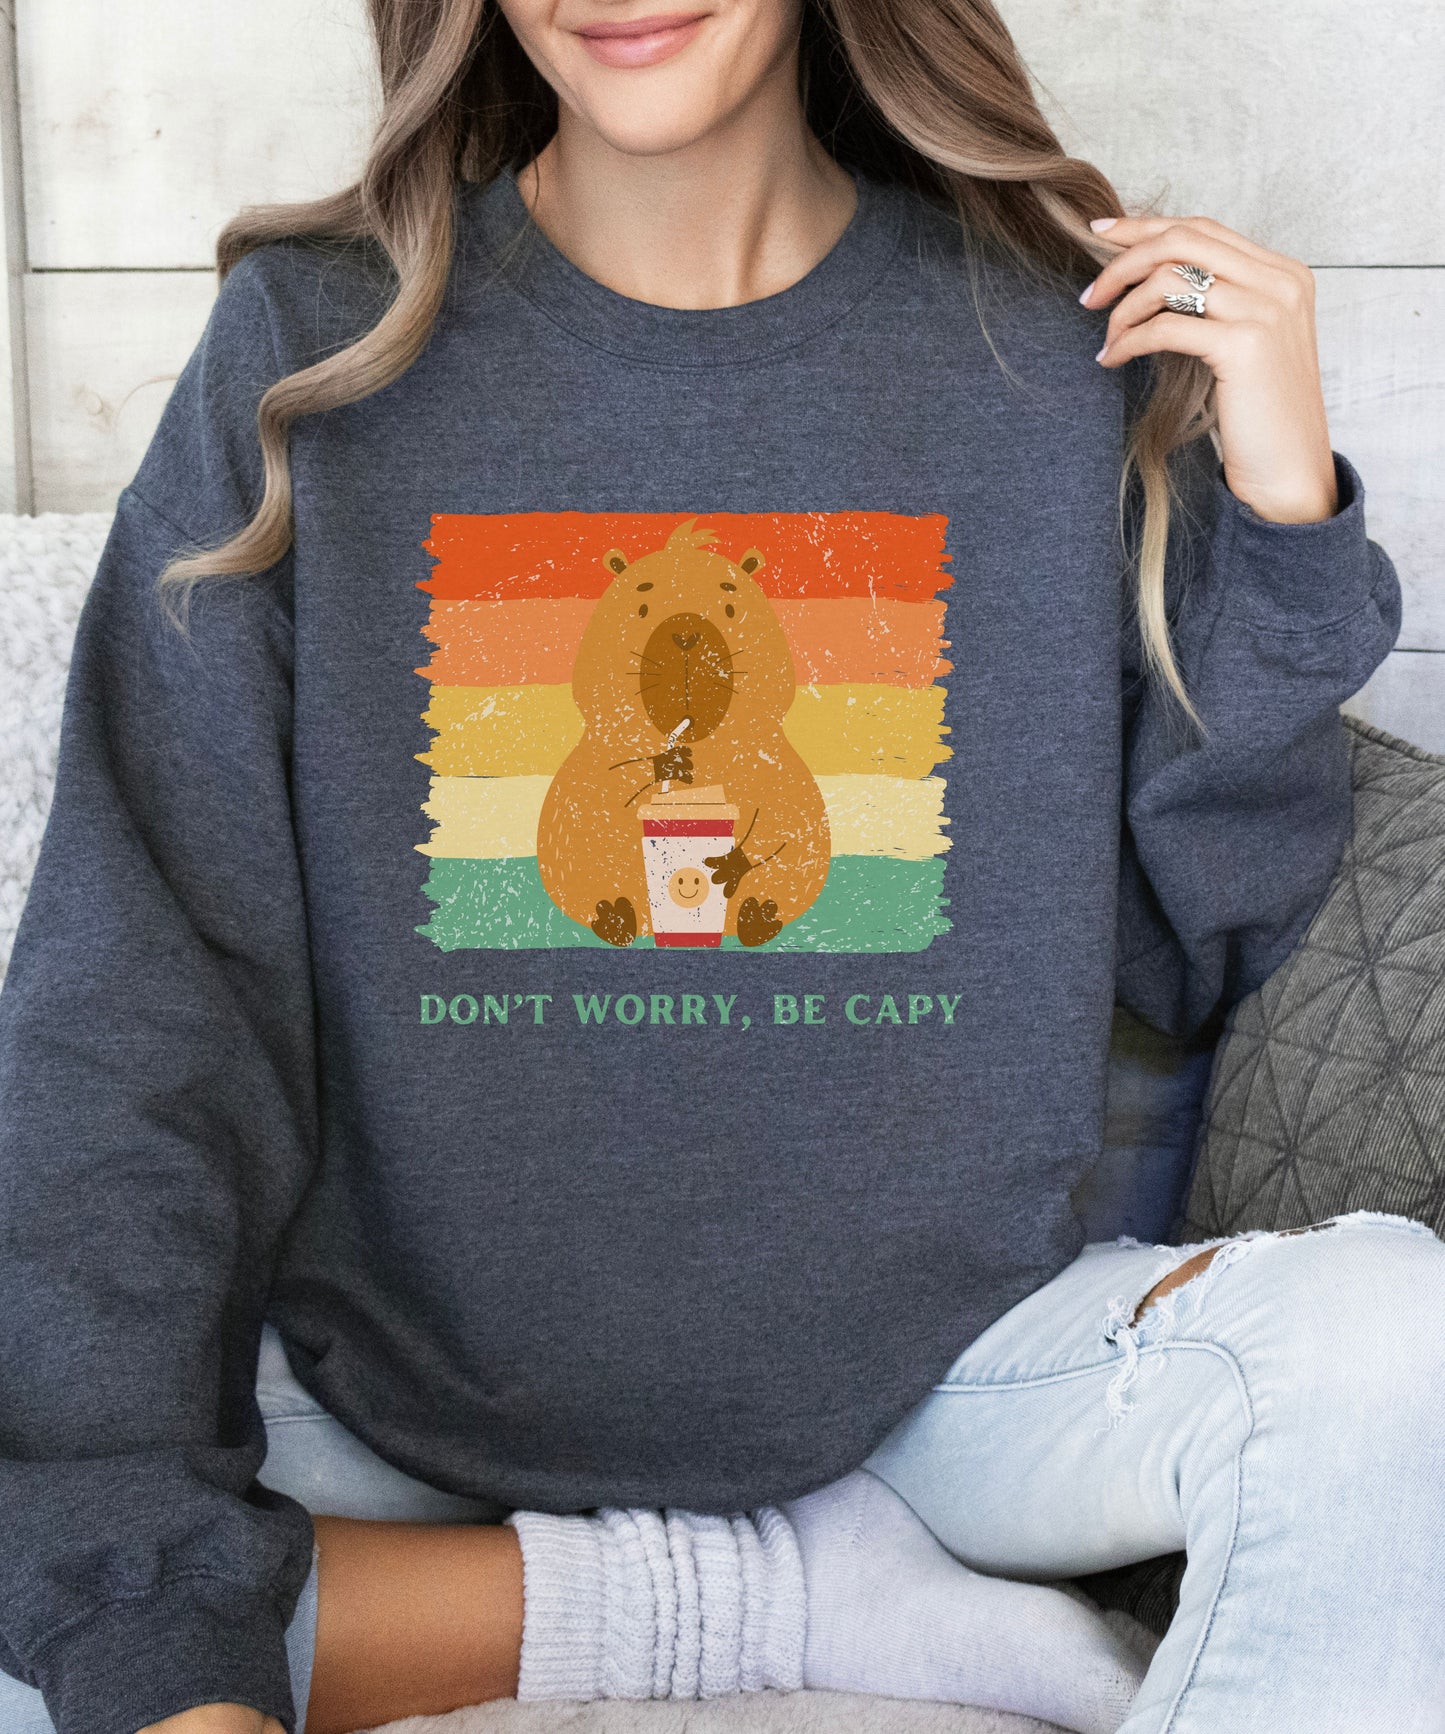 Cabybara sweatshirt